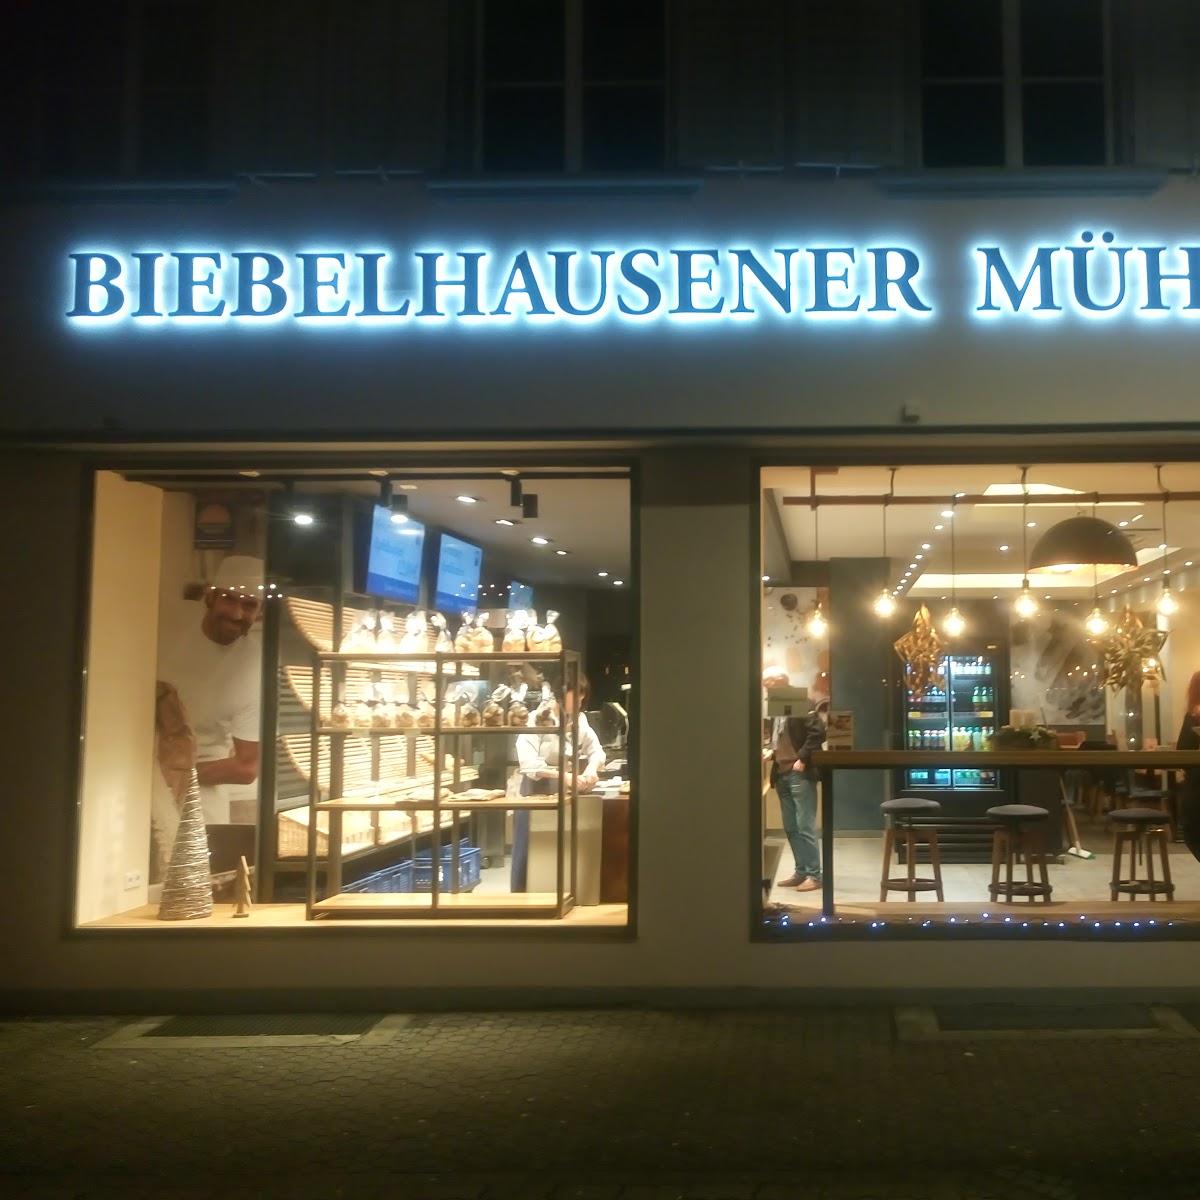 Restaurant "Biebelhausener Mühle GmbH & Co.KG" in Saarlouis